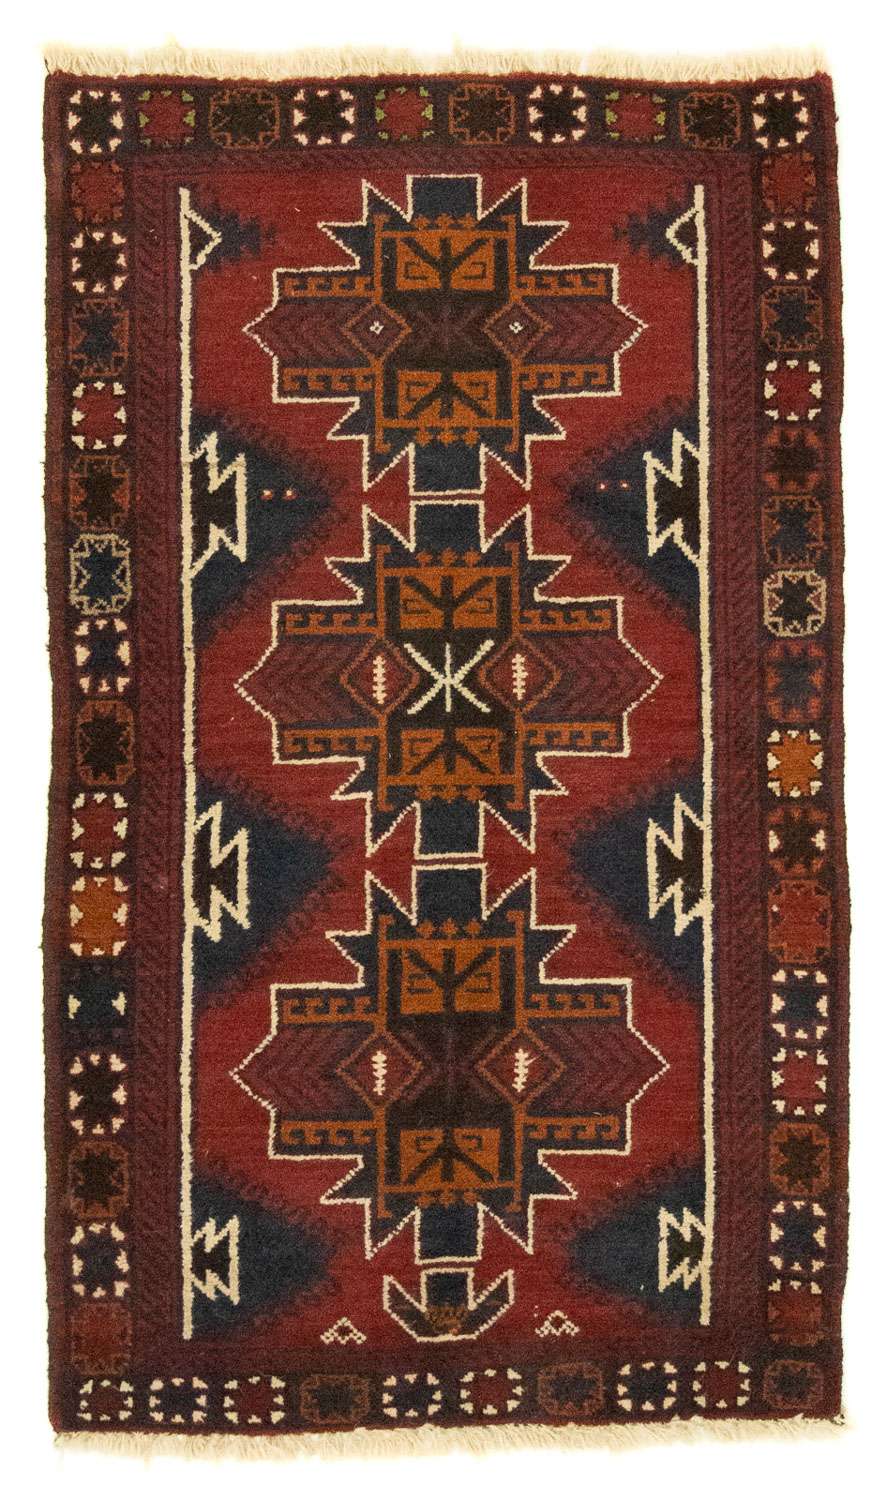 Dywan beludżycki - 134 x 80 cm - czerwony